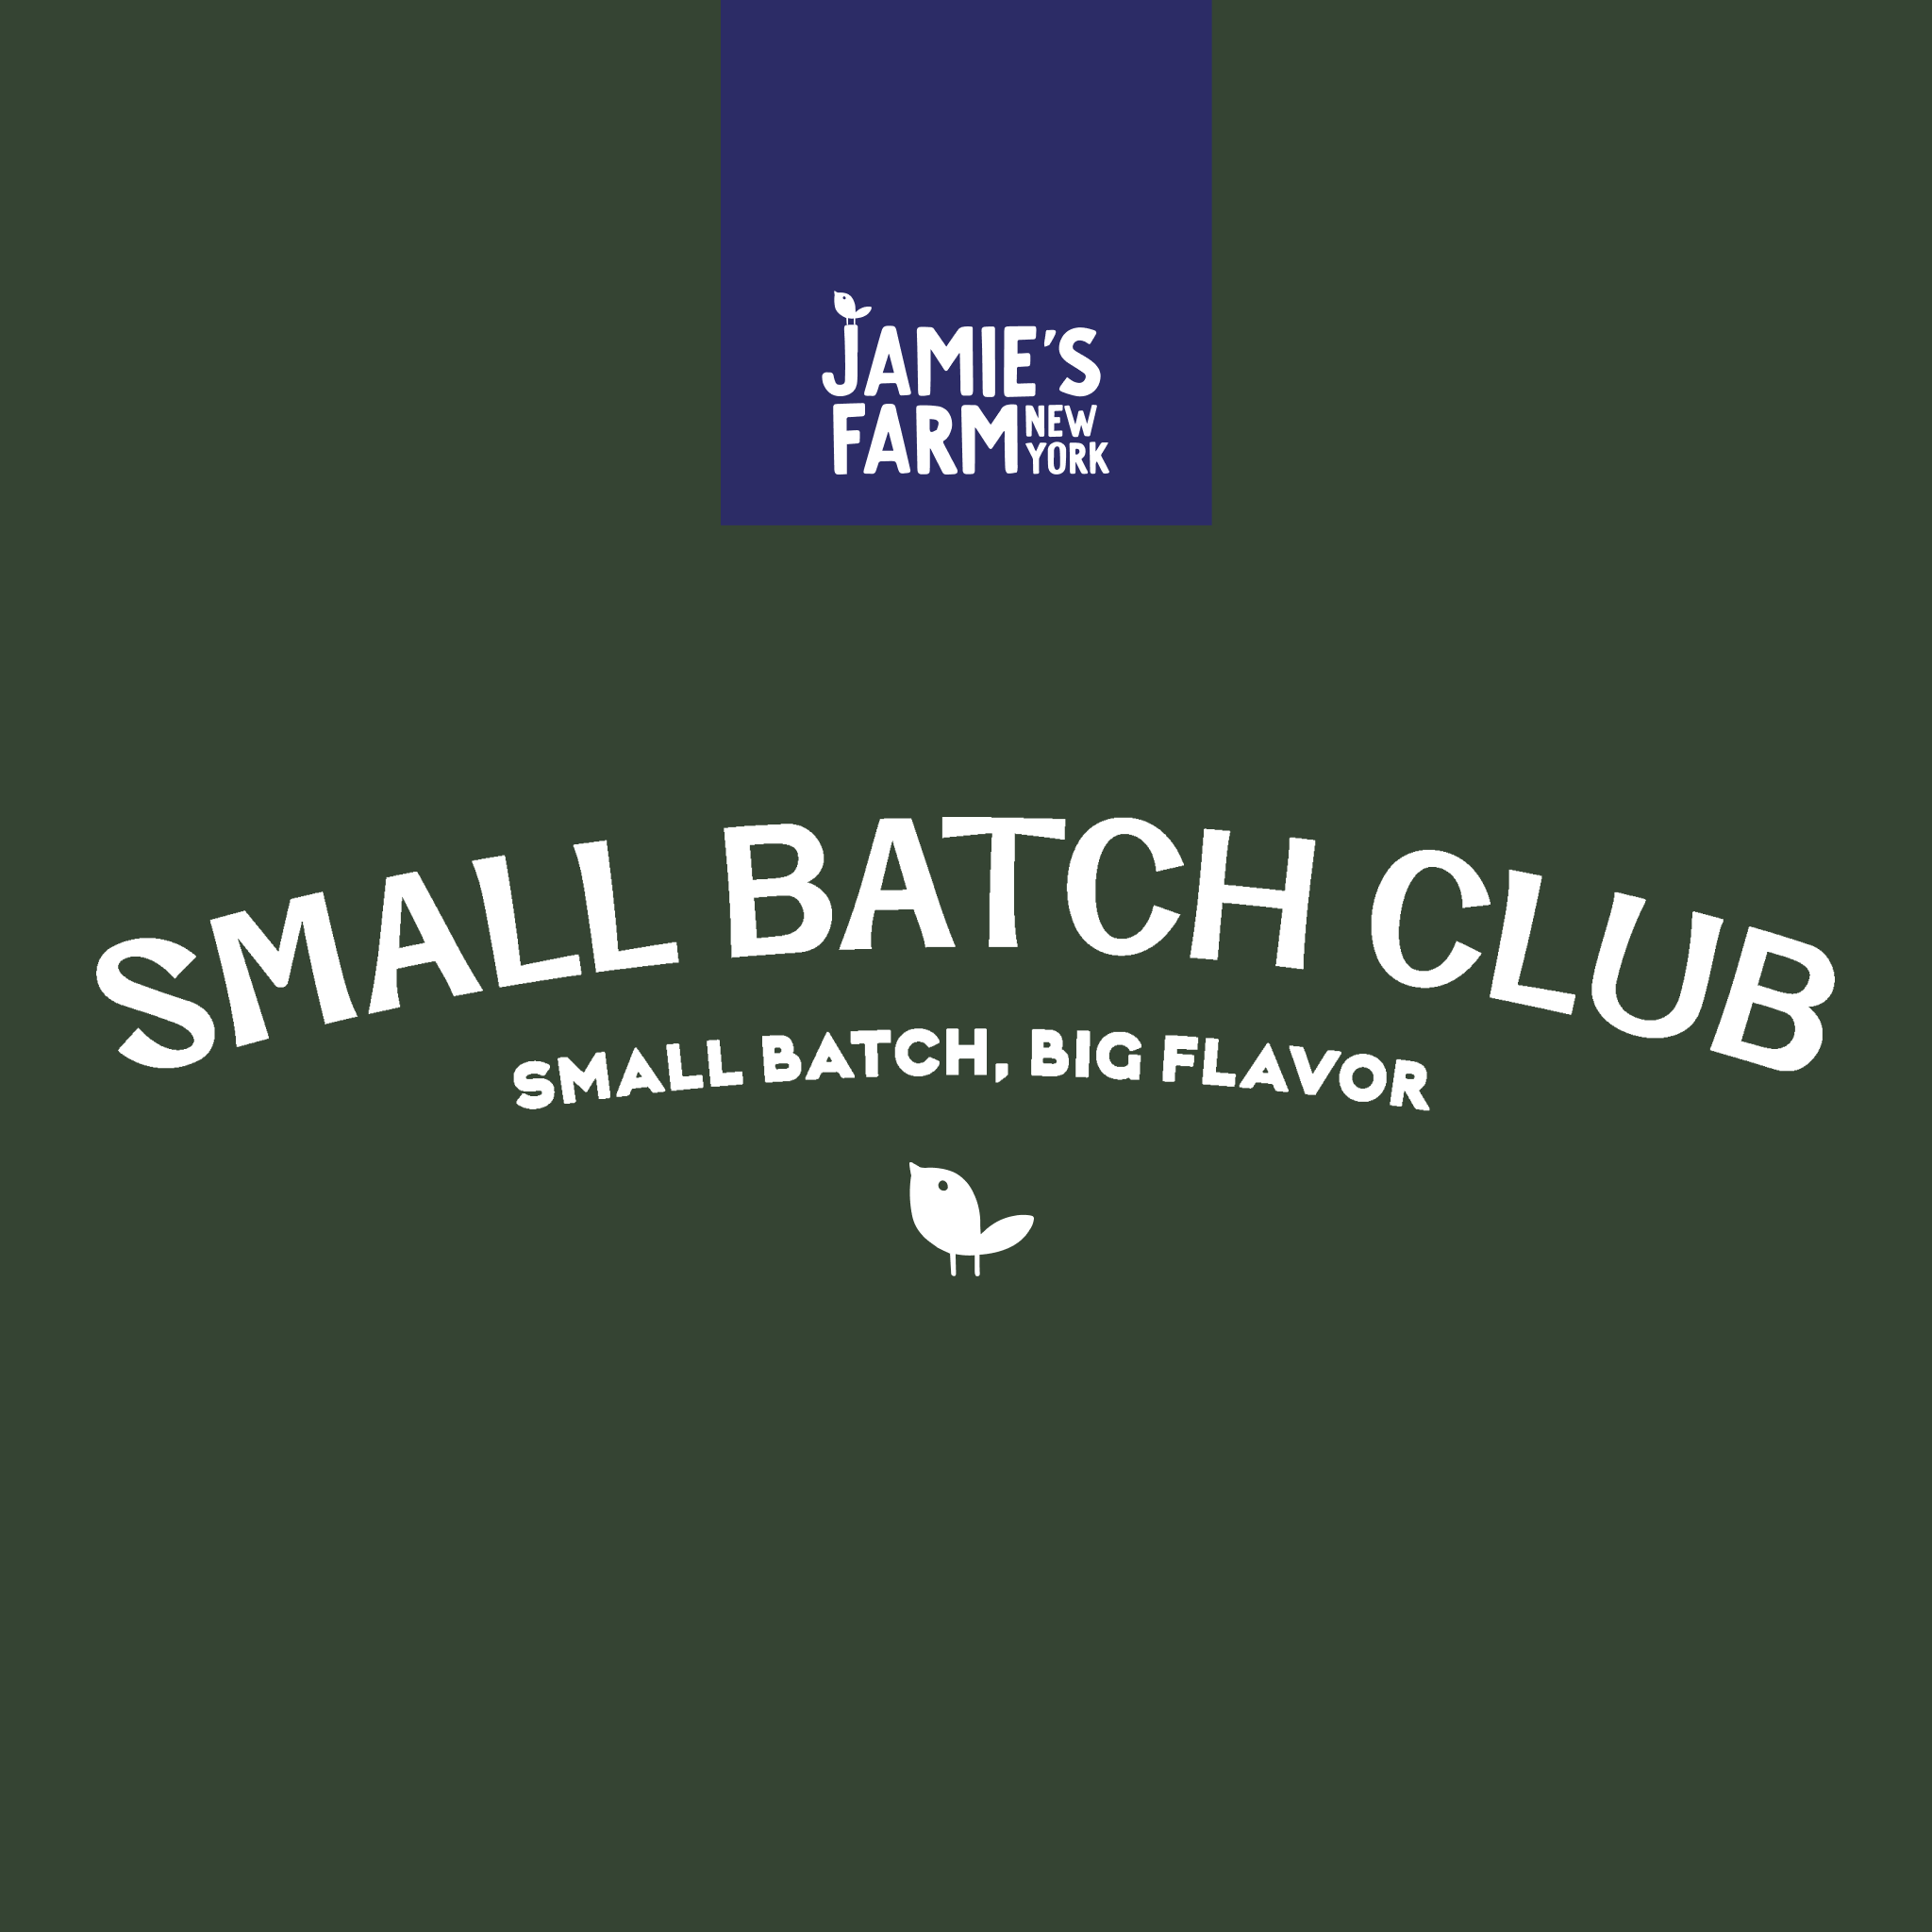 Jamie's Farm Small Batch Club